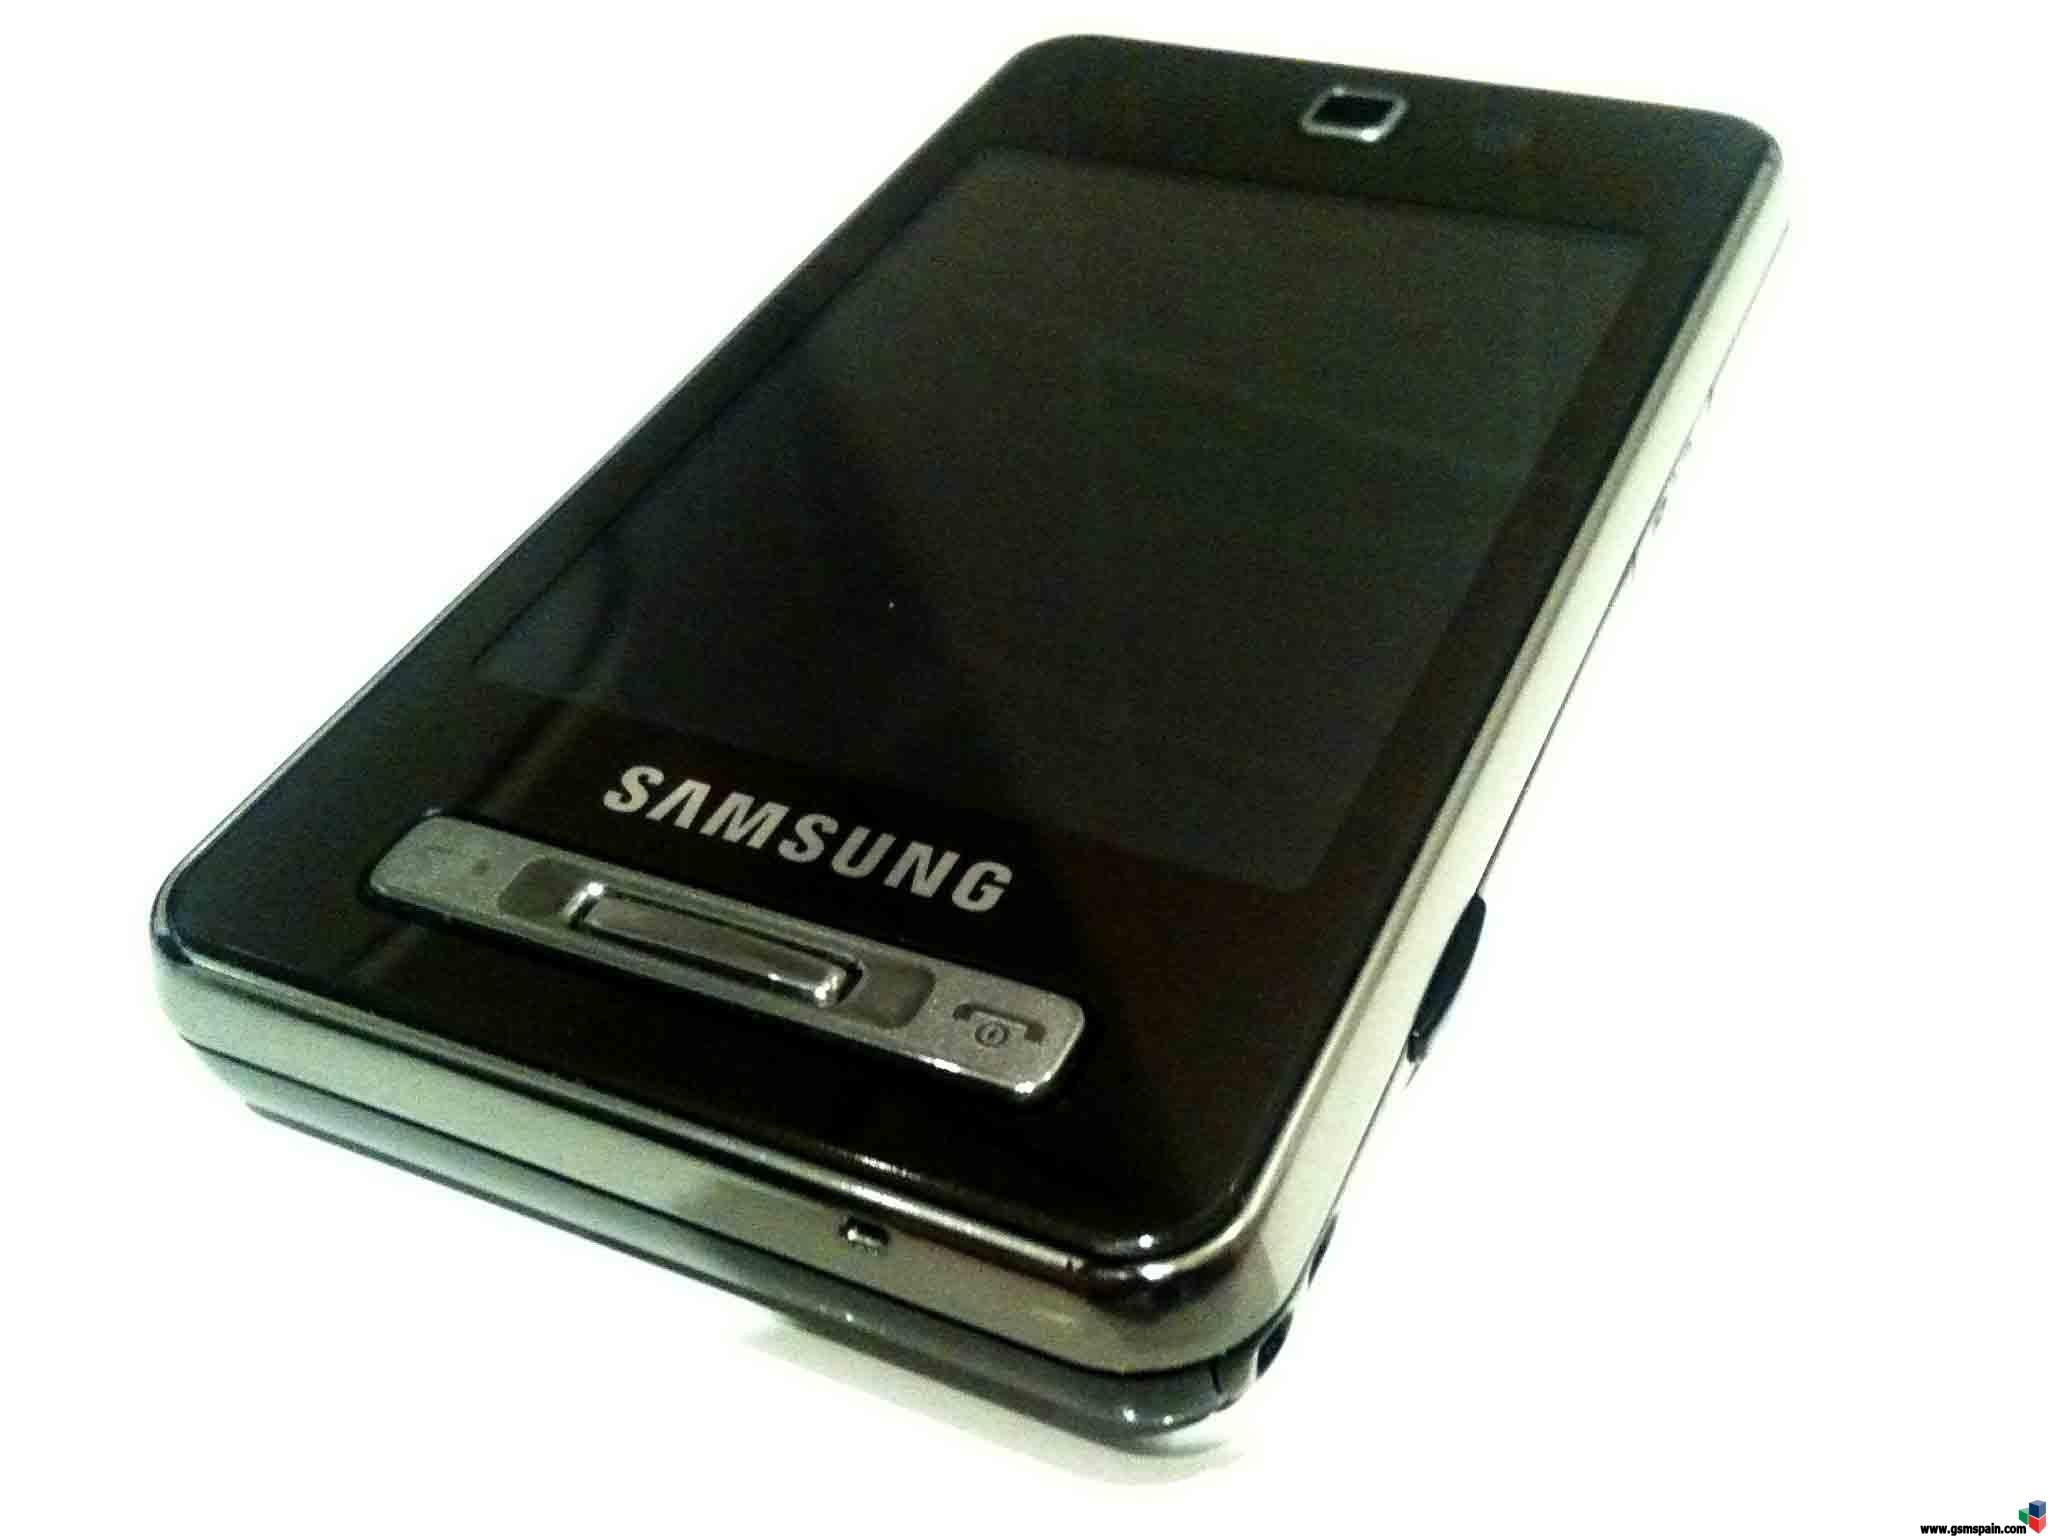 Vendo Samsung f480 libre